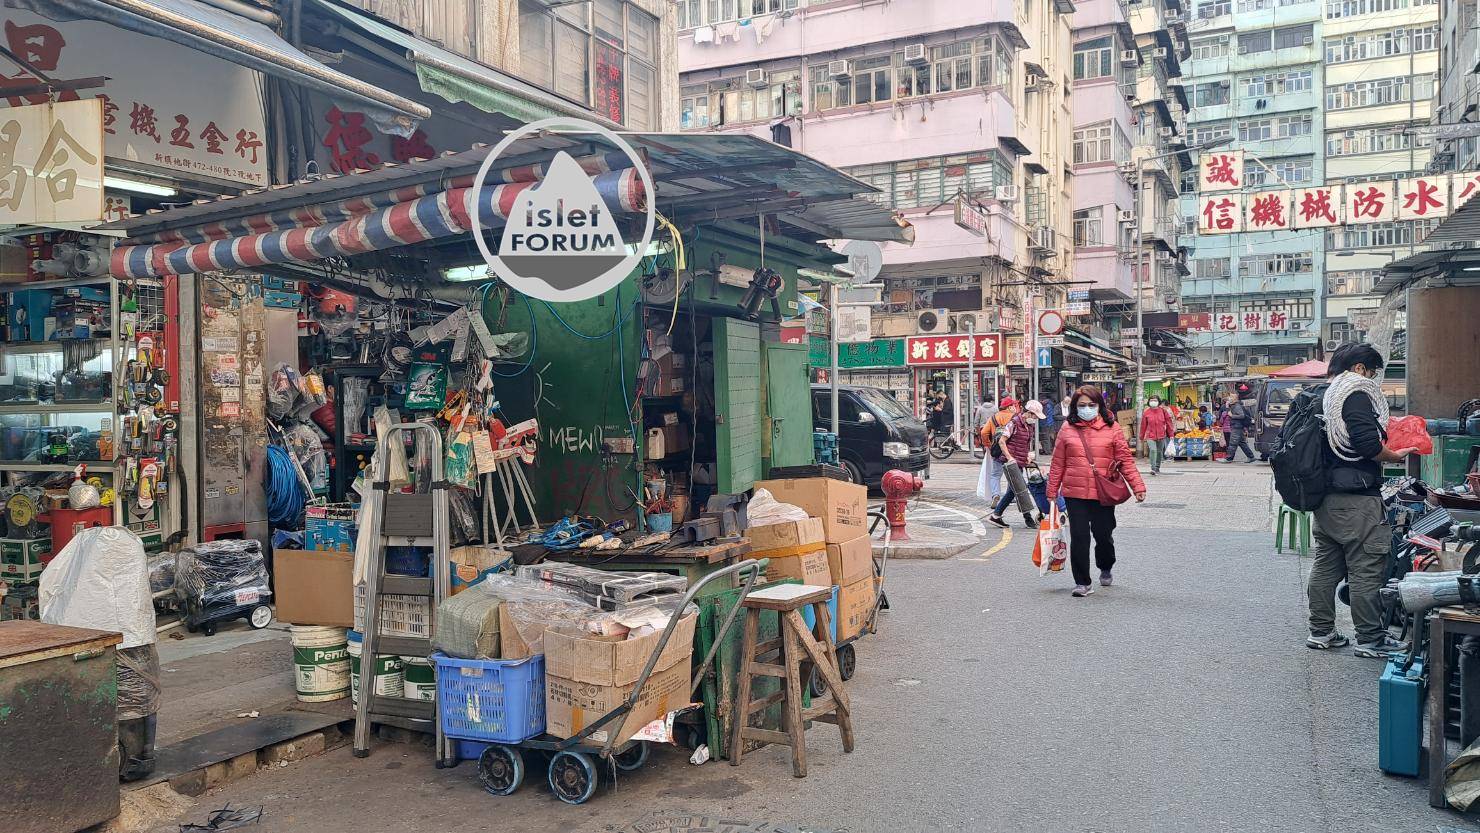 上海街廣東道之間的快富街小販檔 Fife Street Hawker Stall (8).jpg